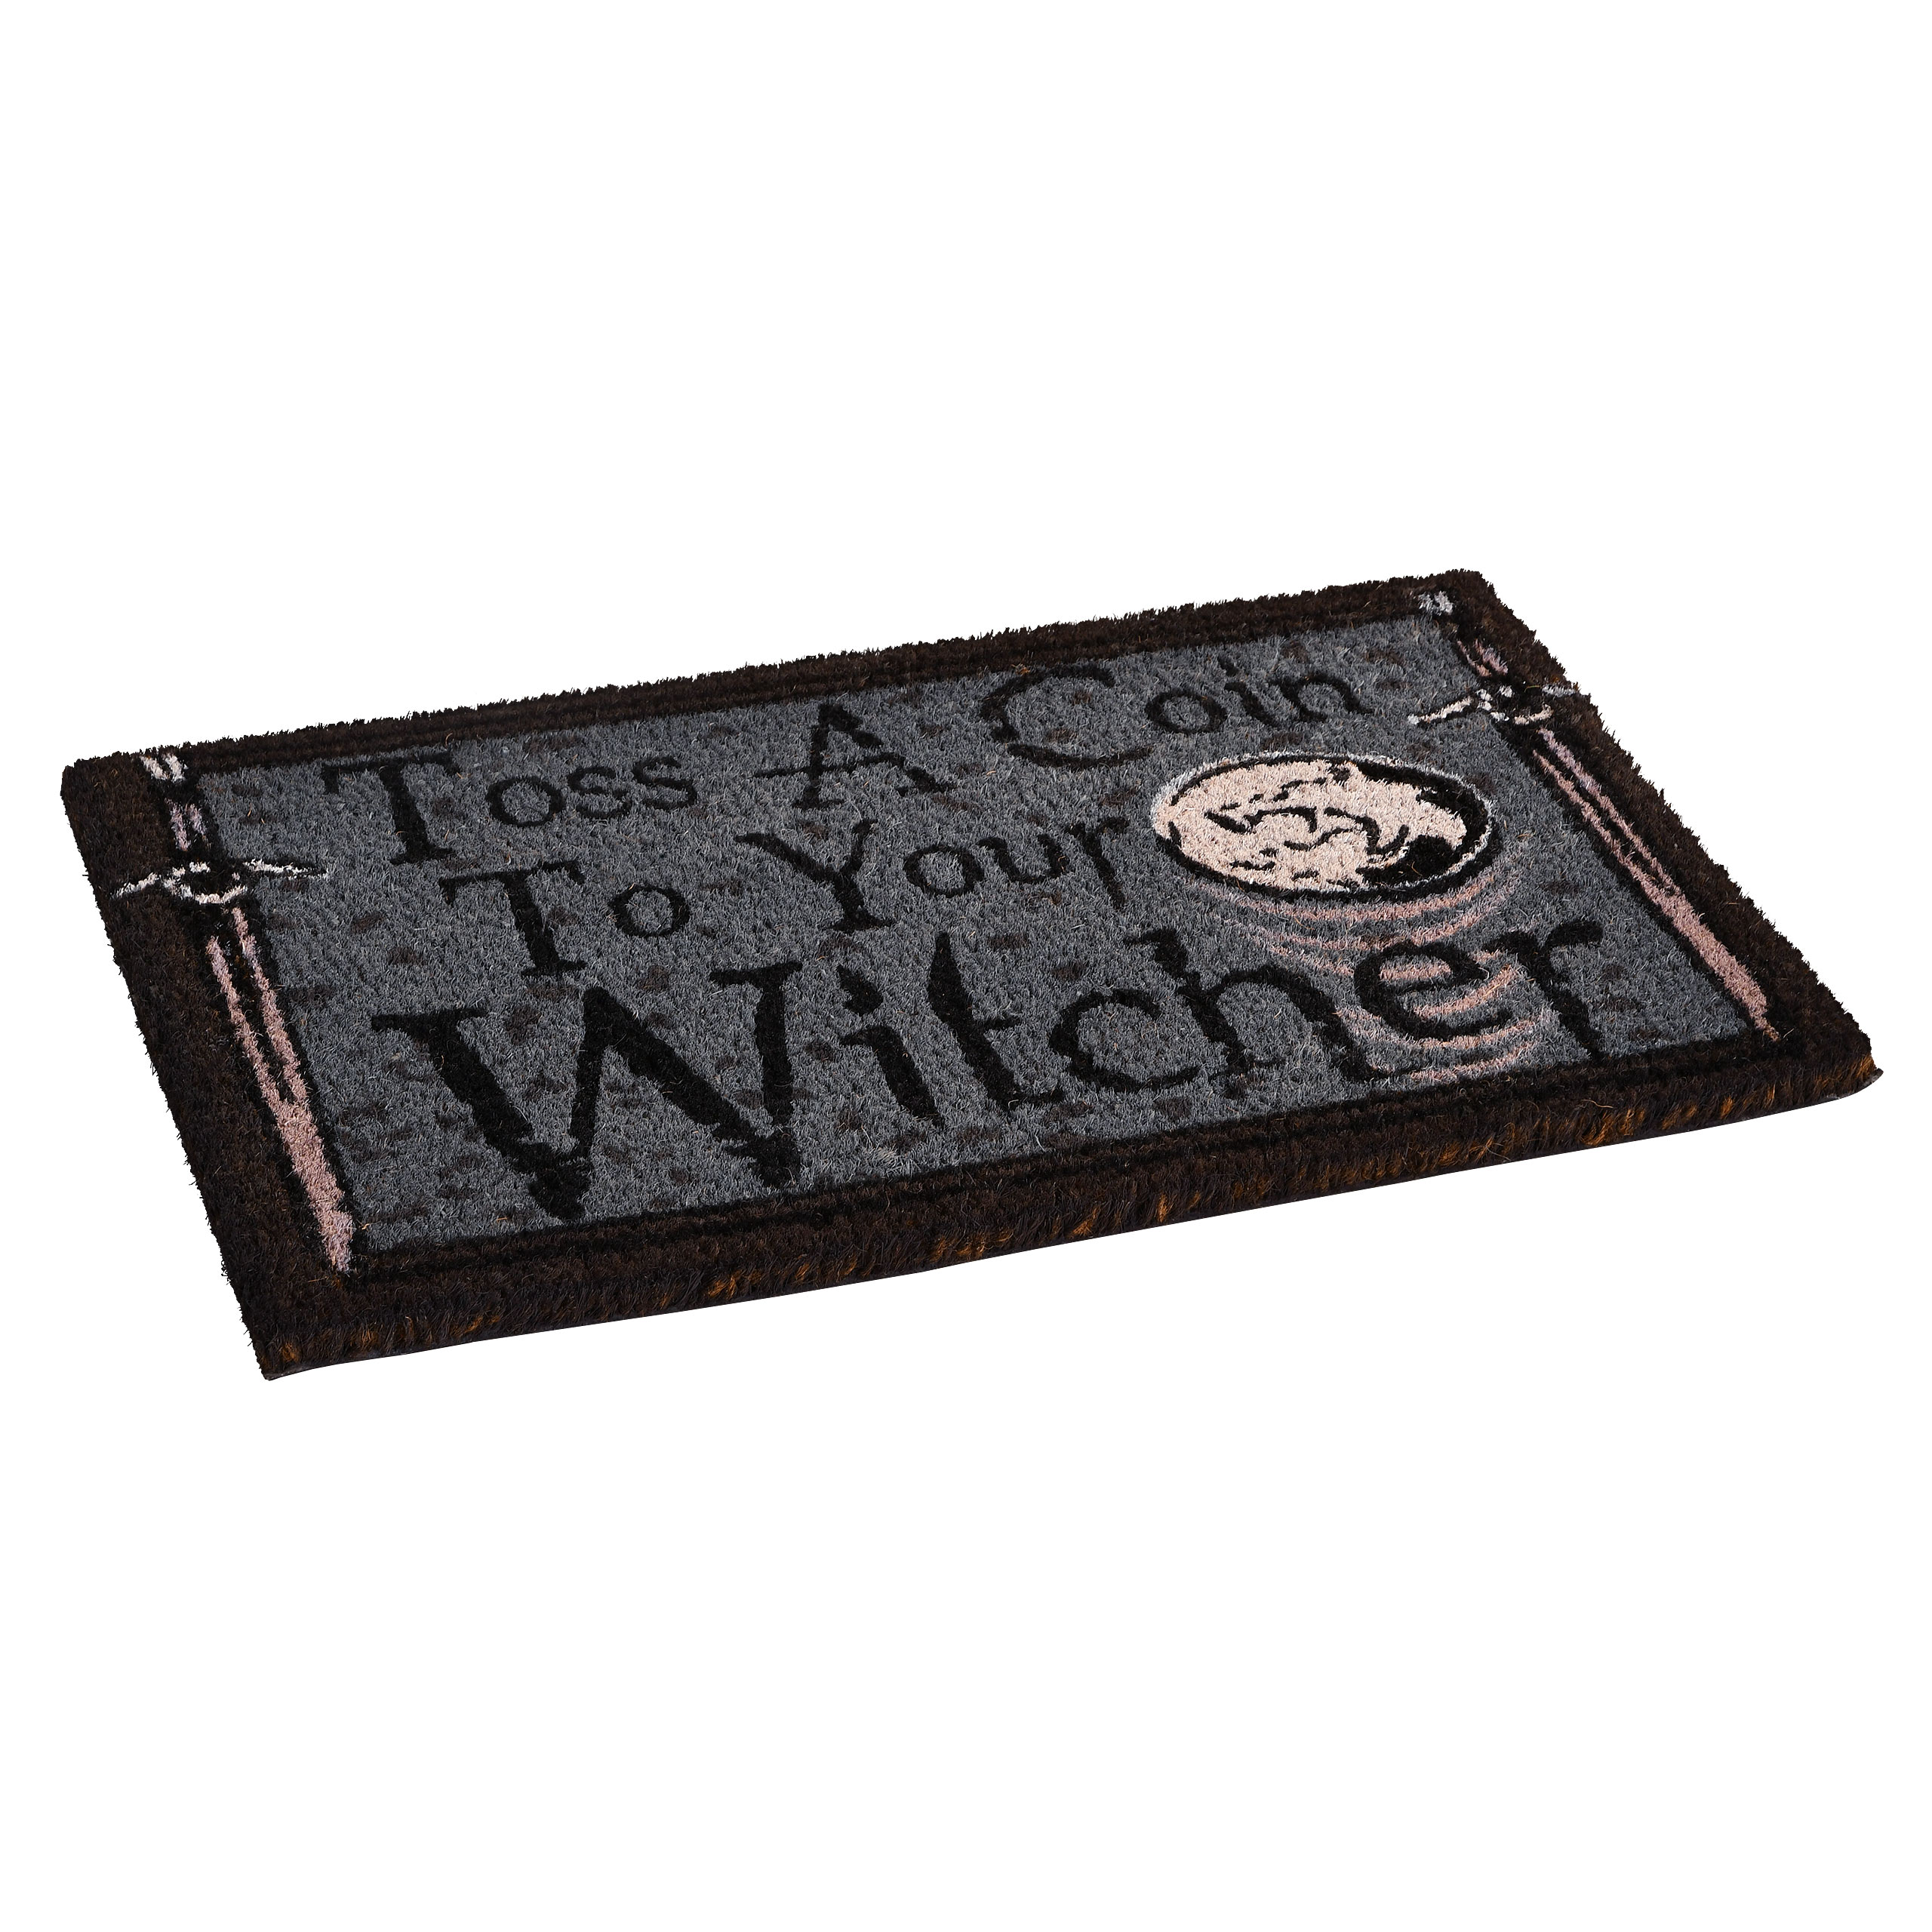 Witcher - Toss a Coin Deurmat